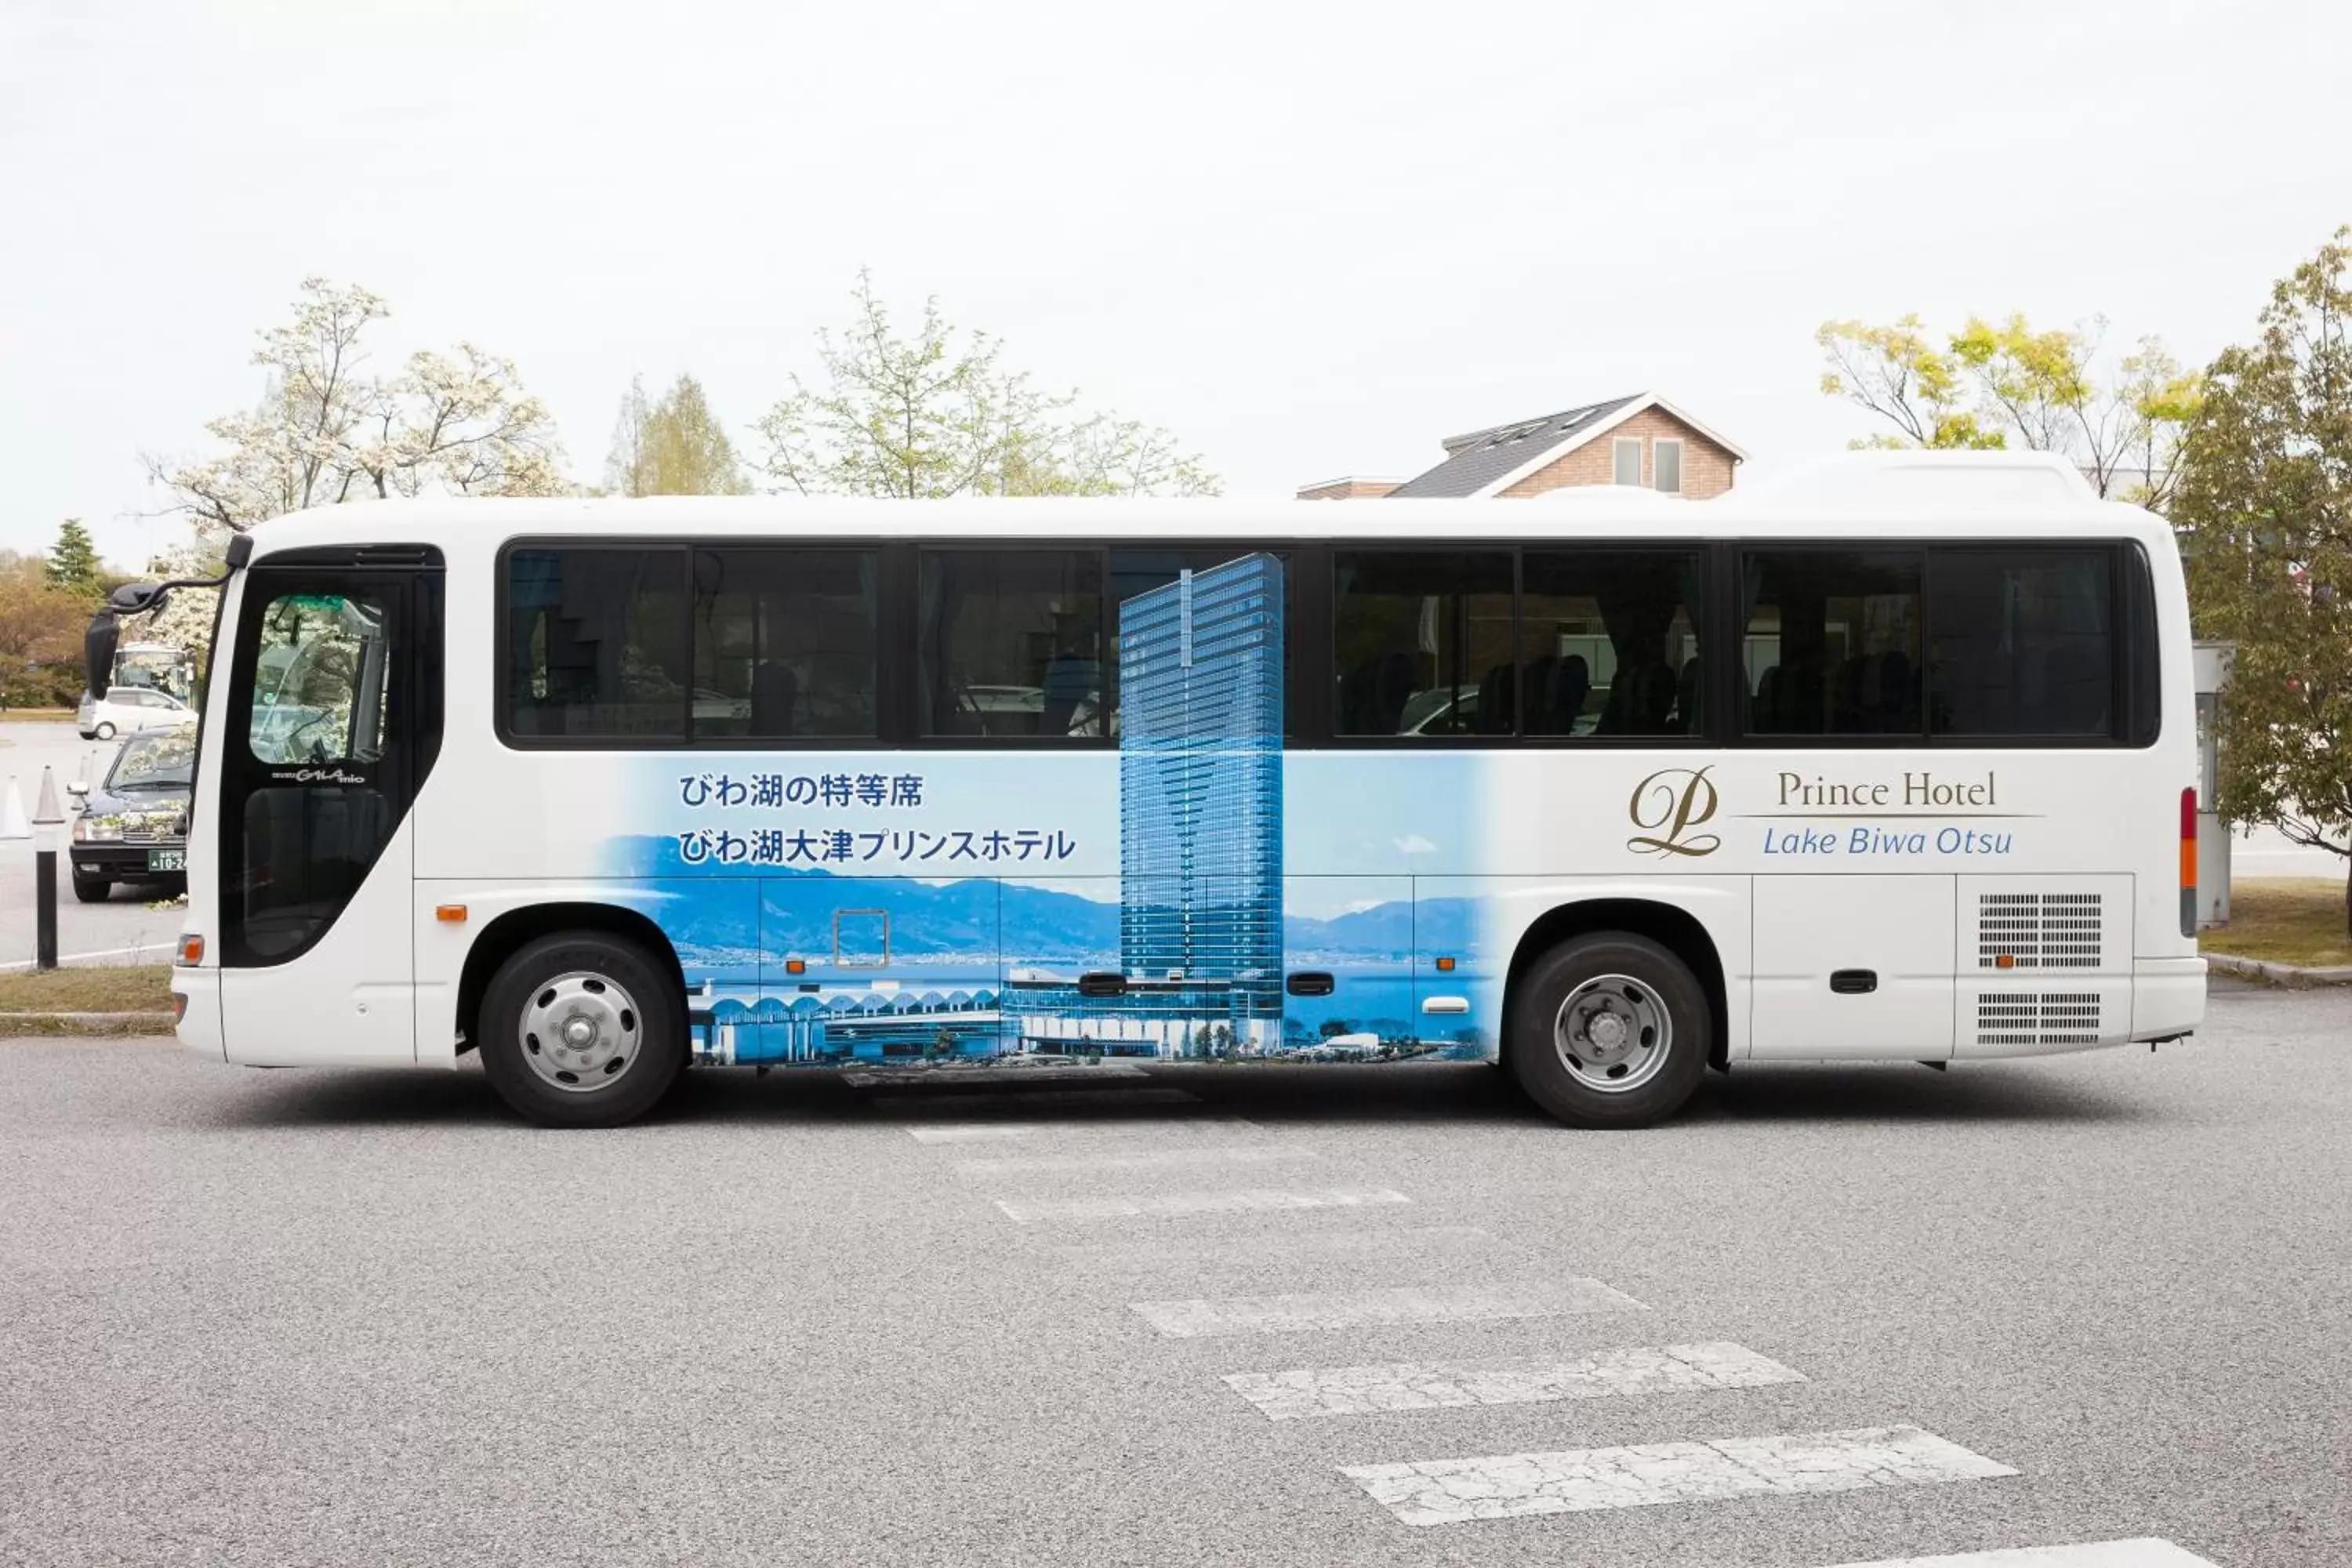 shuttle in Lake Biwa Otsu Prince Hotel